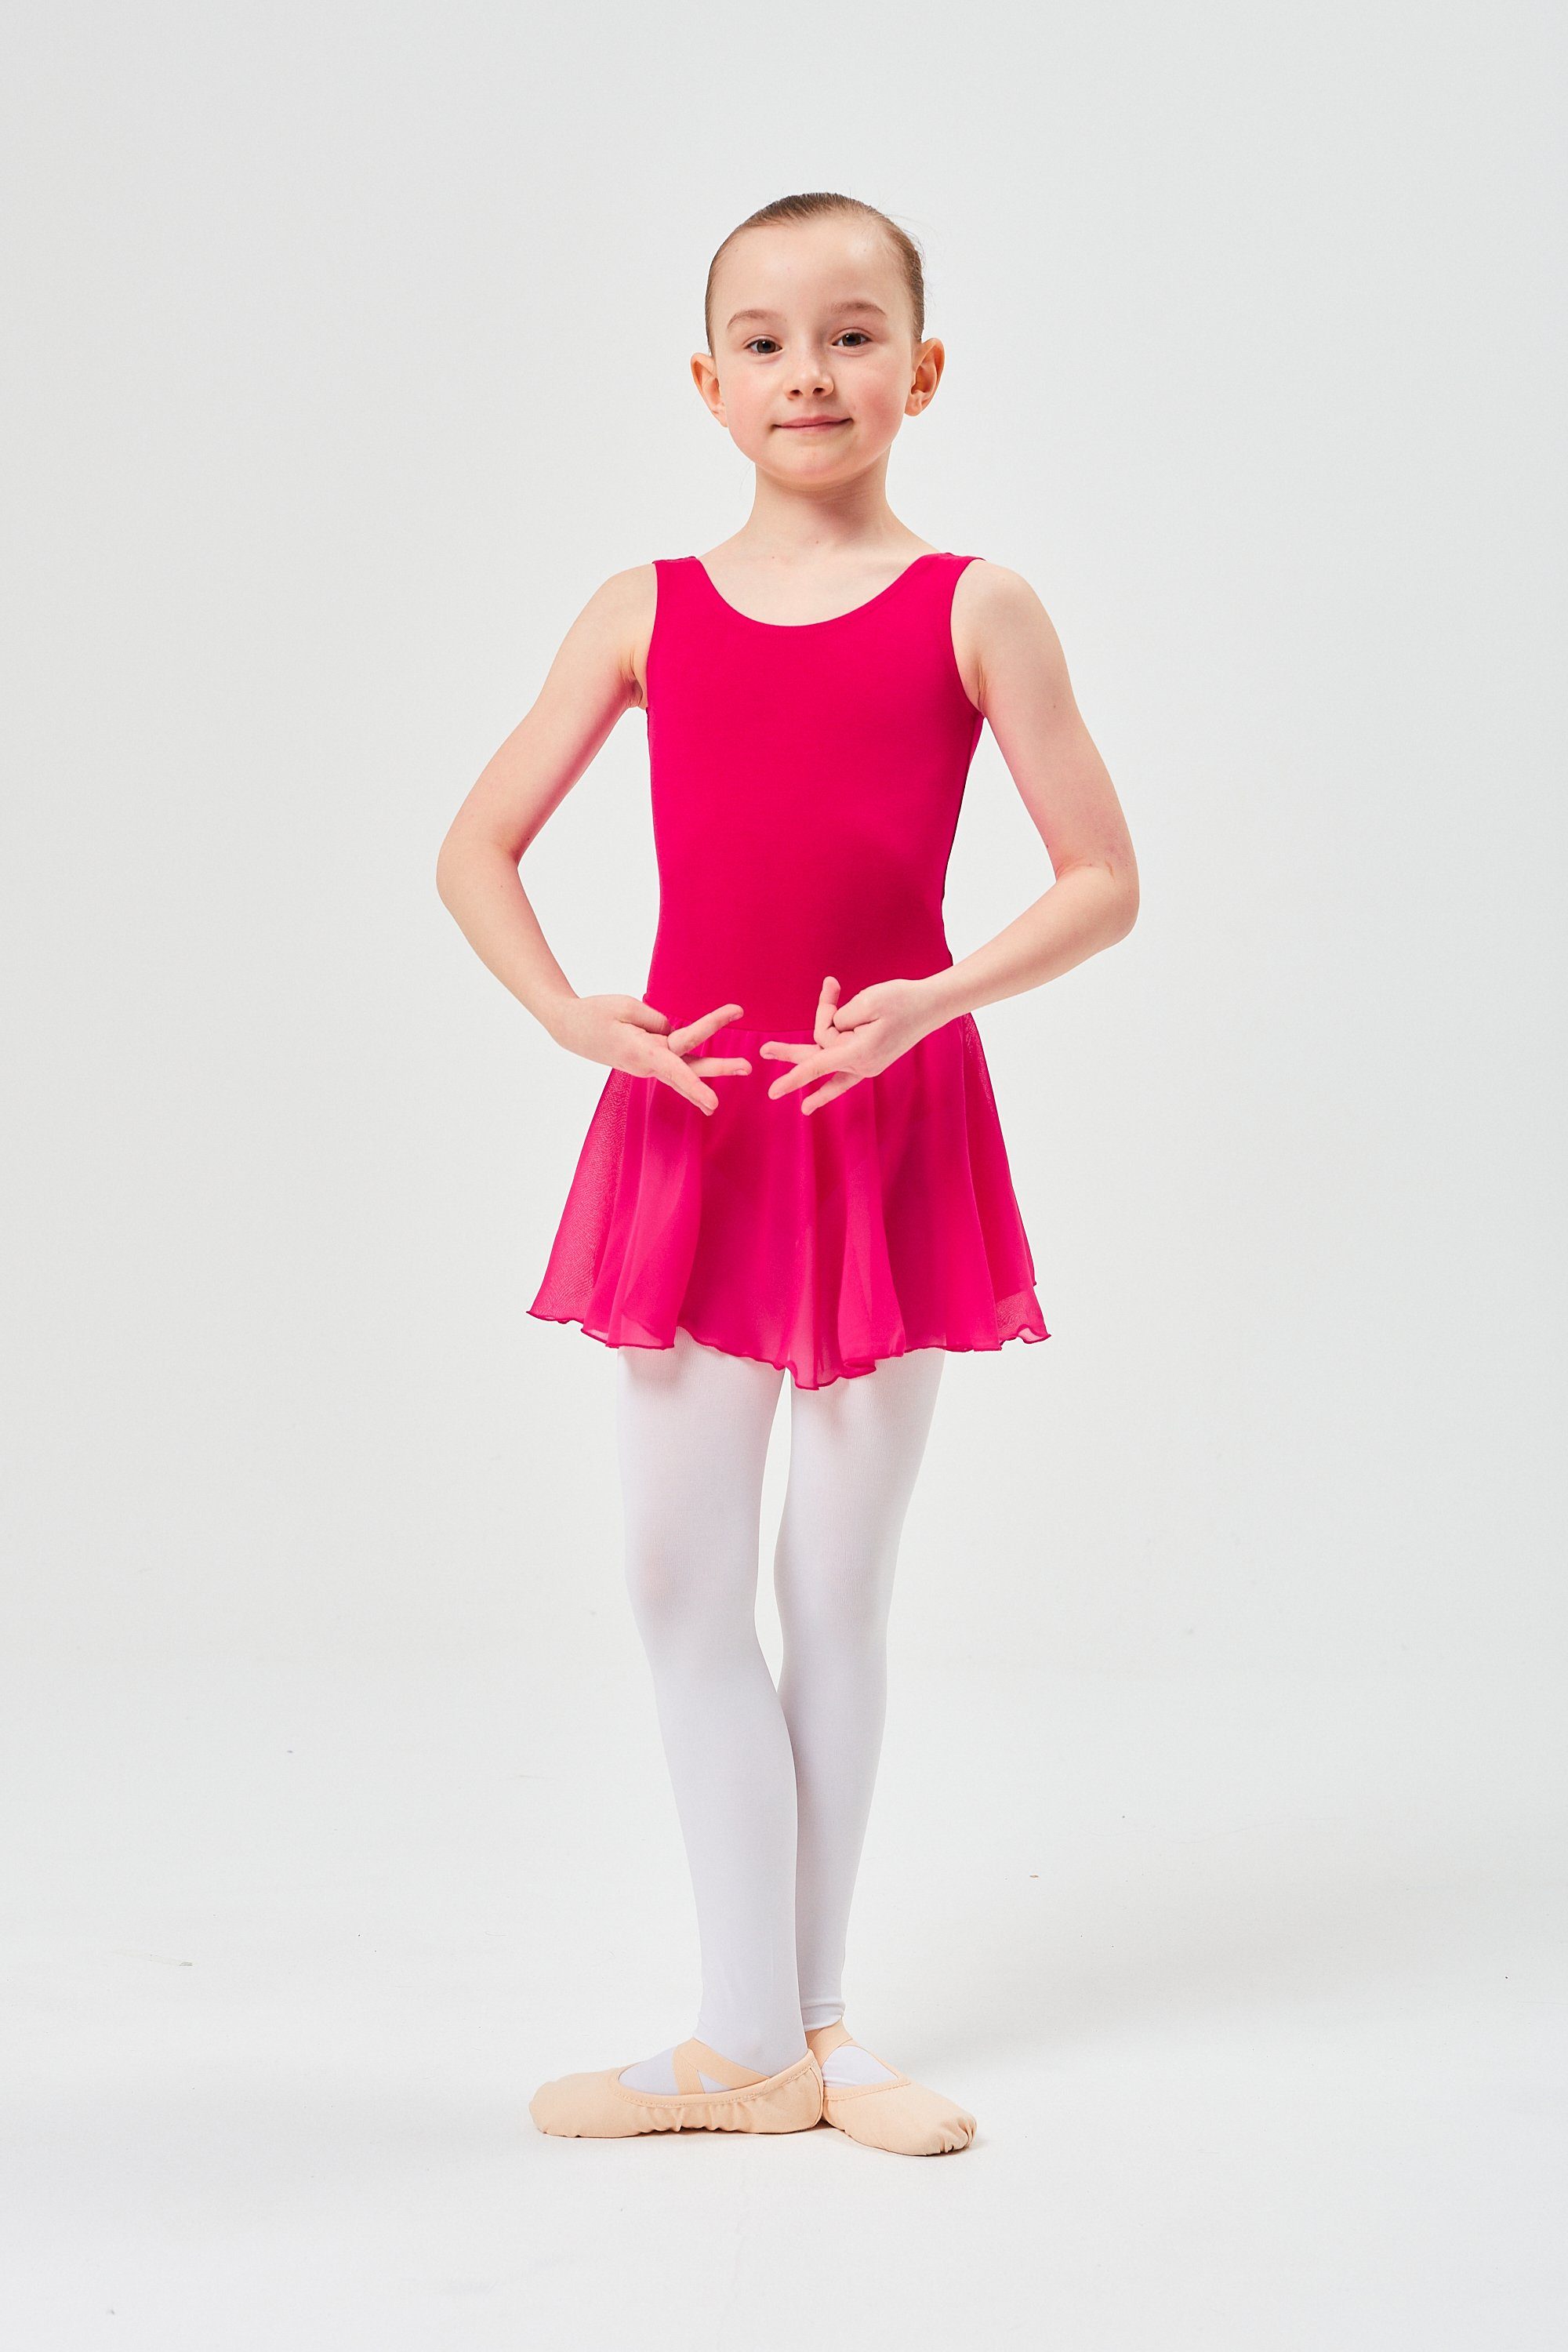 wunderbar aus tanzmuster Chiffonkleid Chiffon Baumwollmaterial Minnie Ballettkleid Mädchen Ballett mit pink weichem Trikot Röckchen für